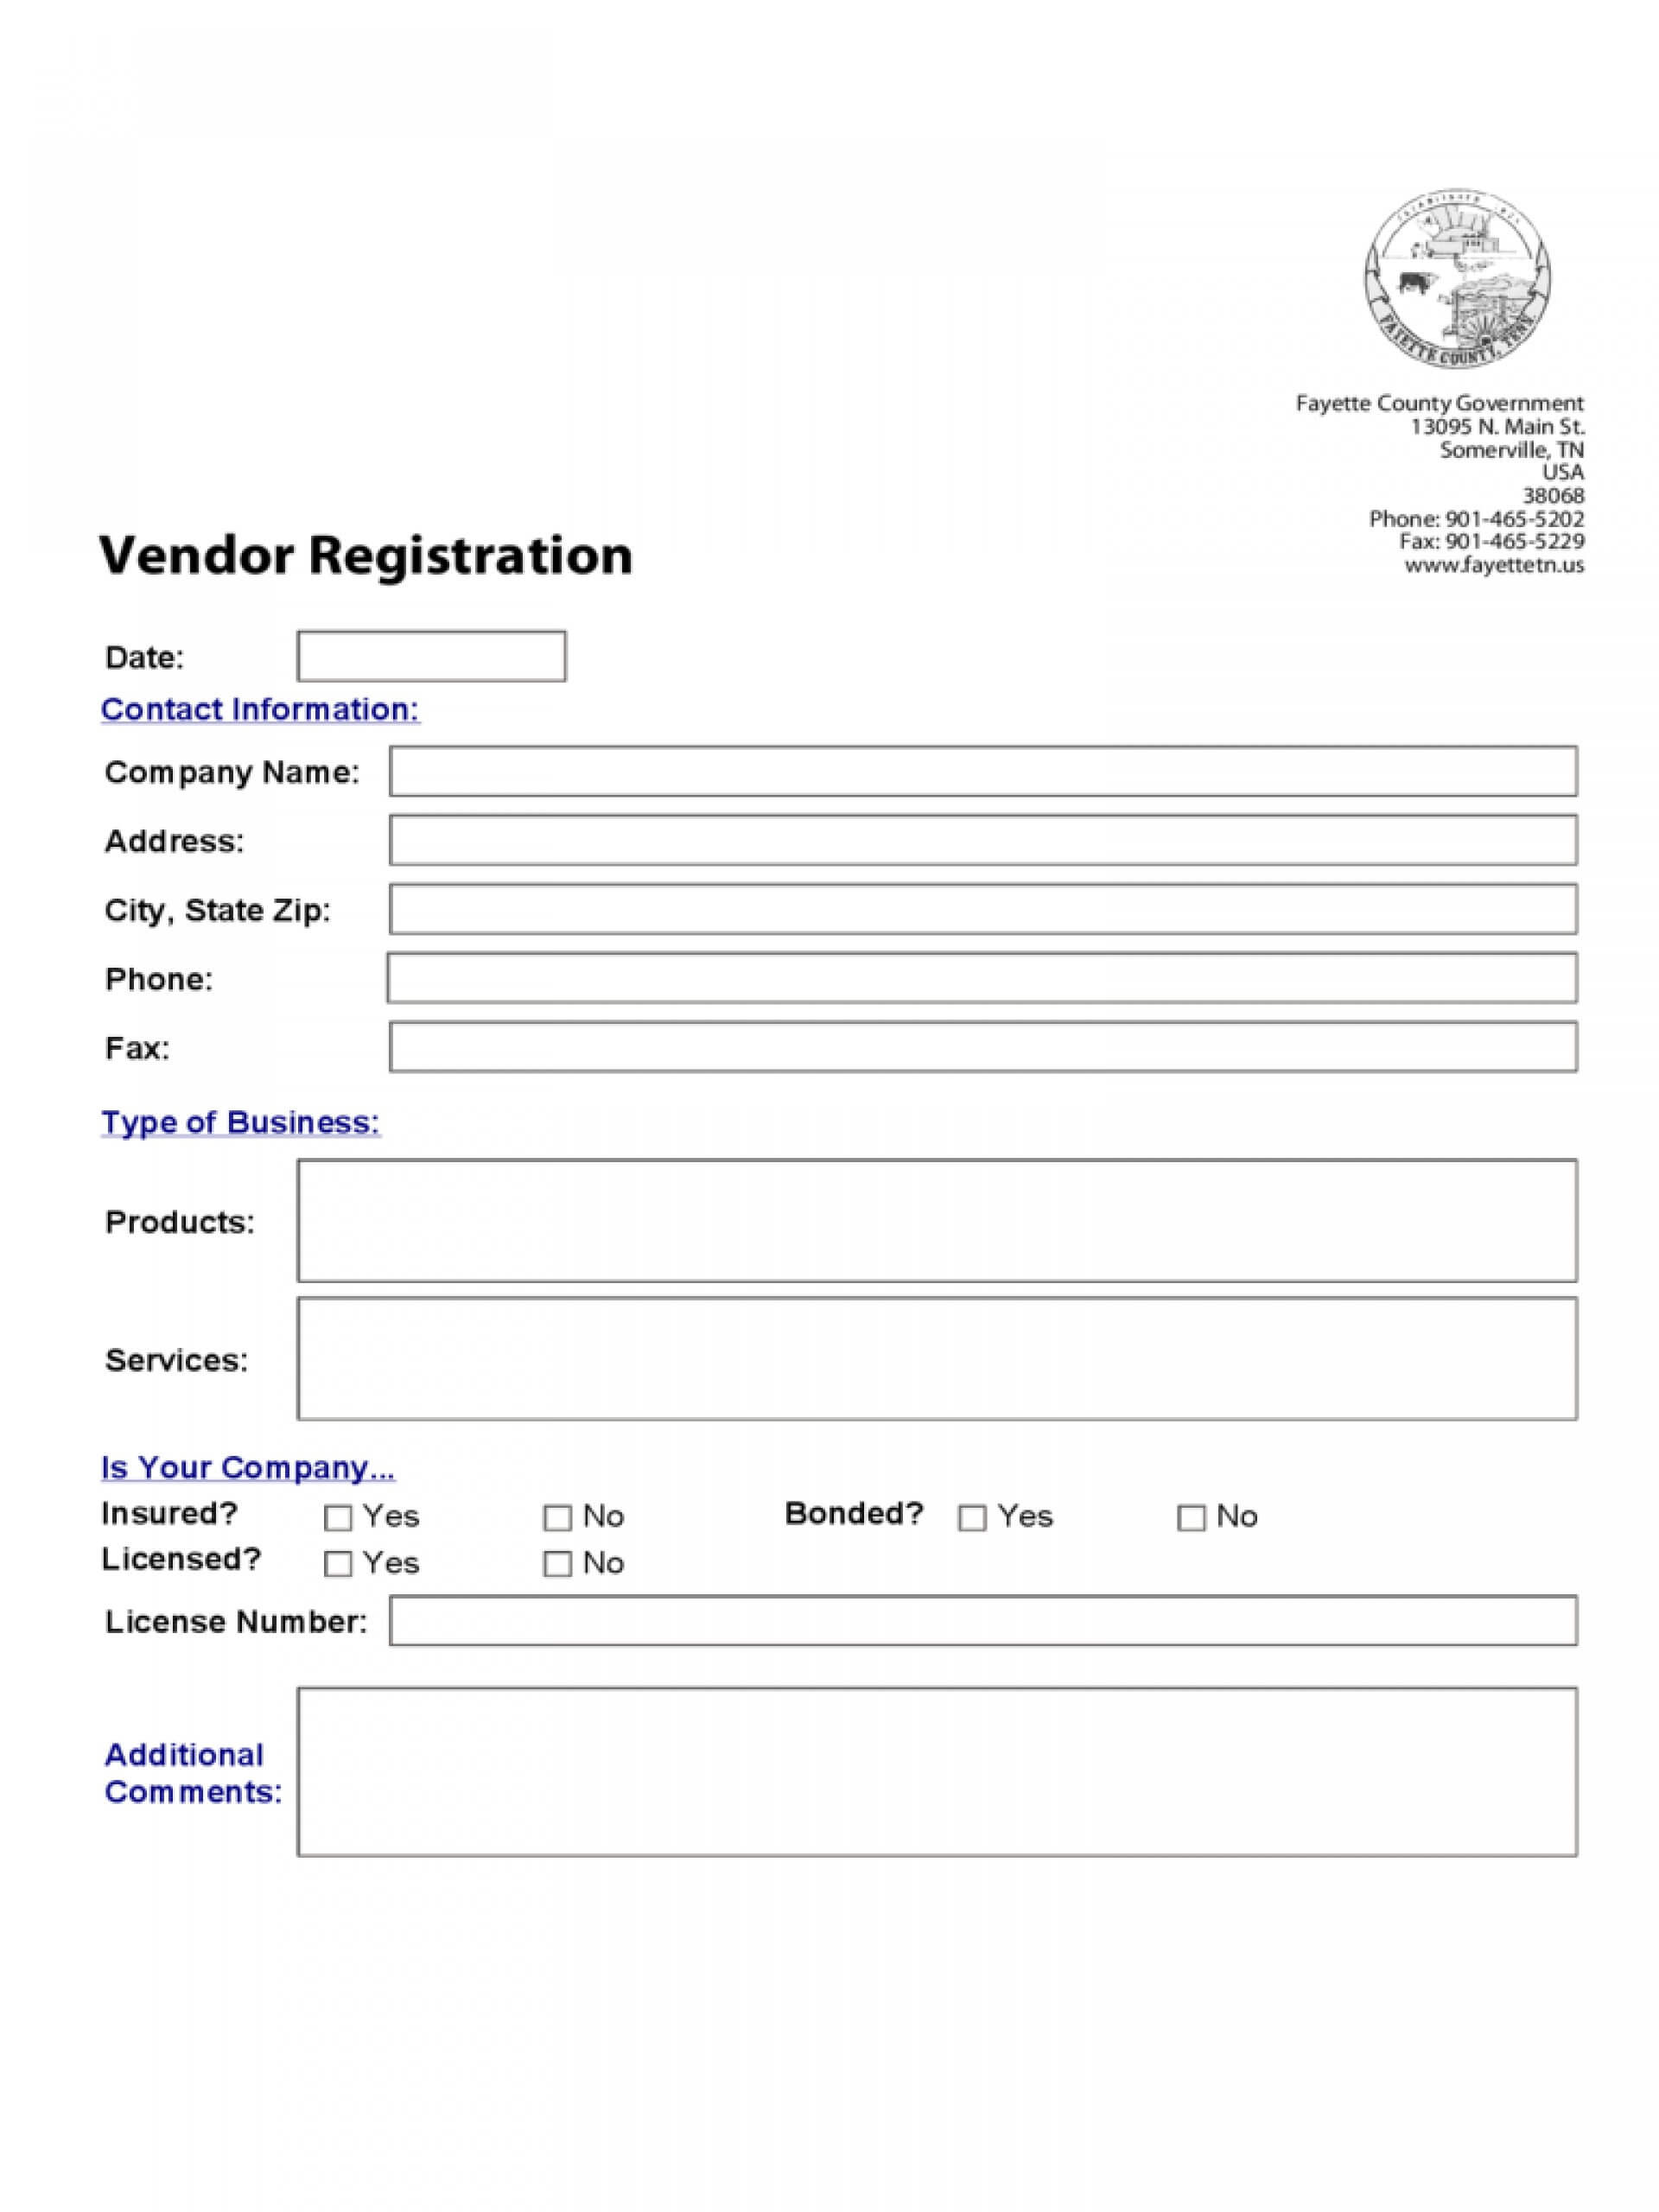 Vendor Form Template Word – Ironi.celikdemirsan Inside Registration Form Template Word Free